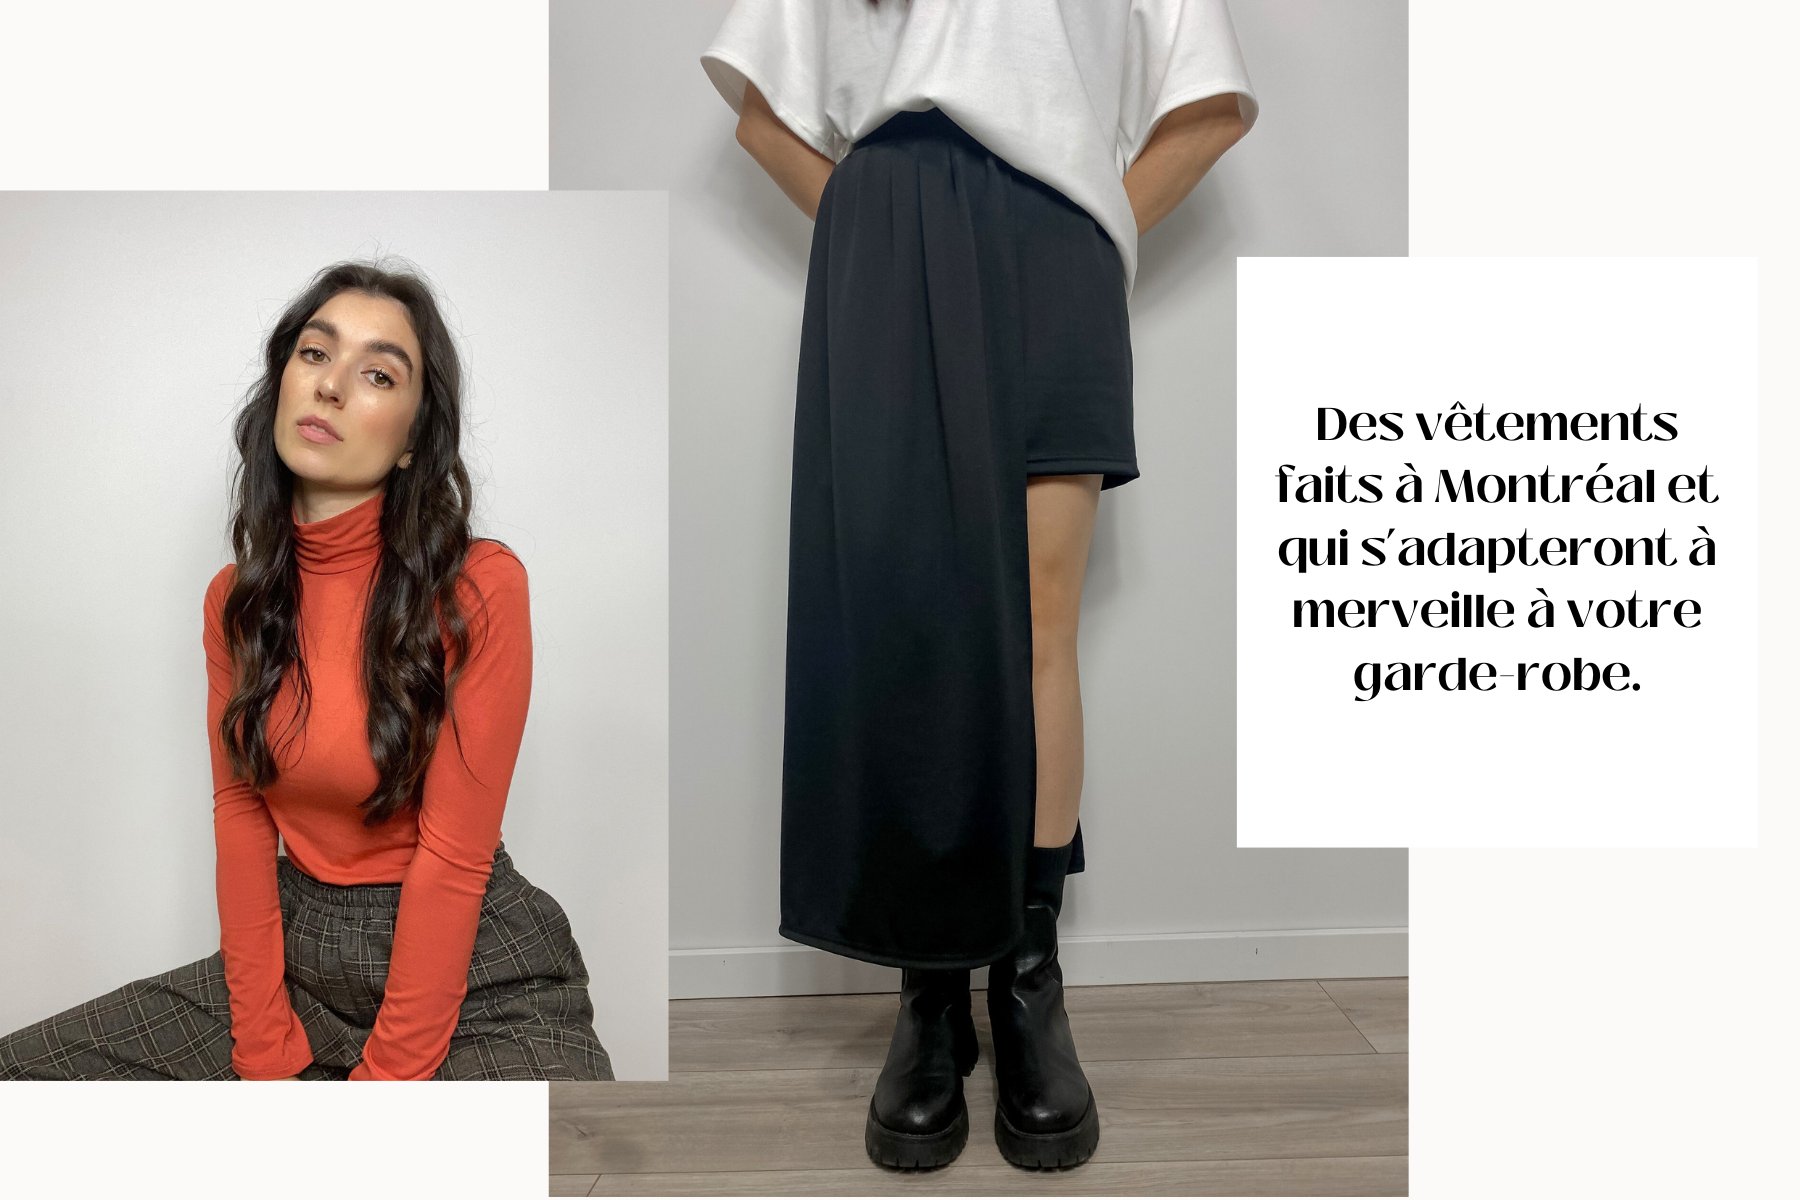 GABRYELLE DESIGNS GABRIELLE THIBODEAU Fait à Montréal mode lente designer de mode entreprise de vêtements pour femmes slow fashion fashion trends